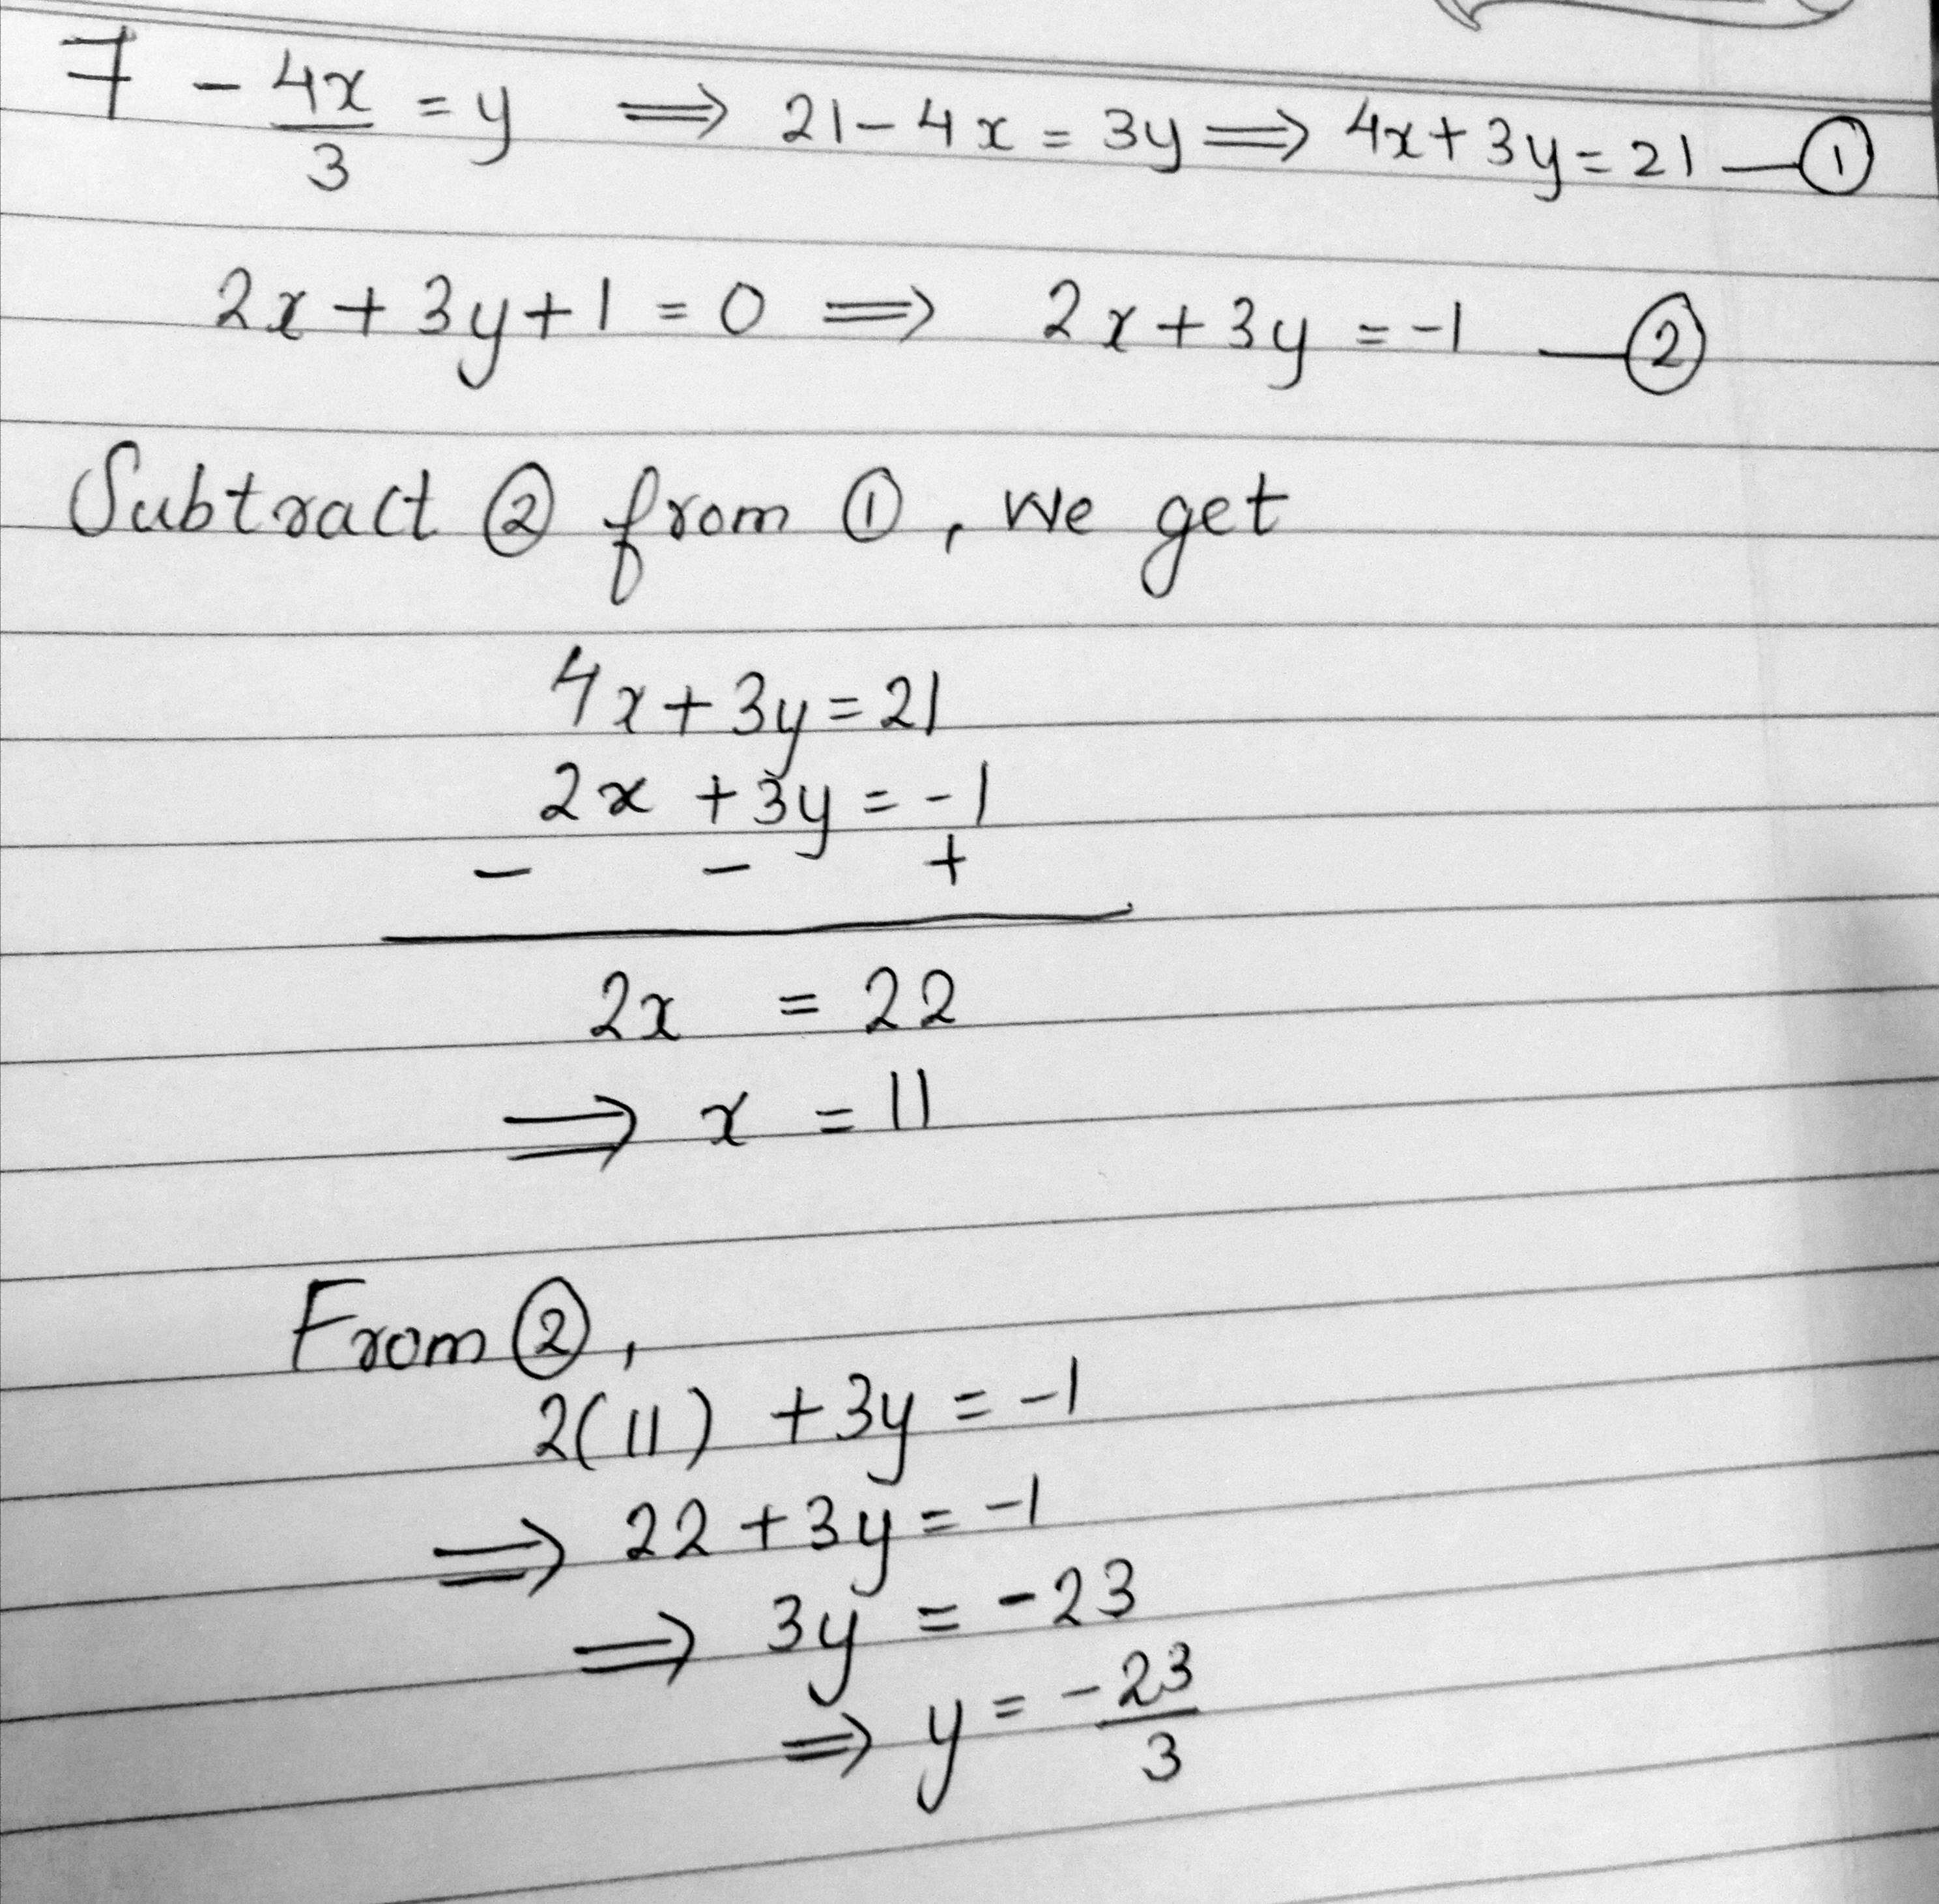 7 4x 3 y 2x 3y 1 0 - Mathematics 